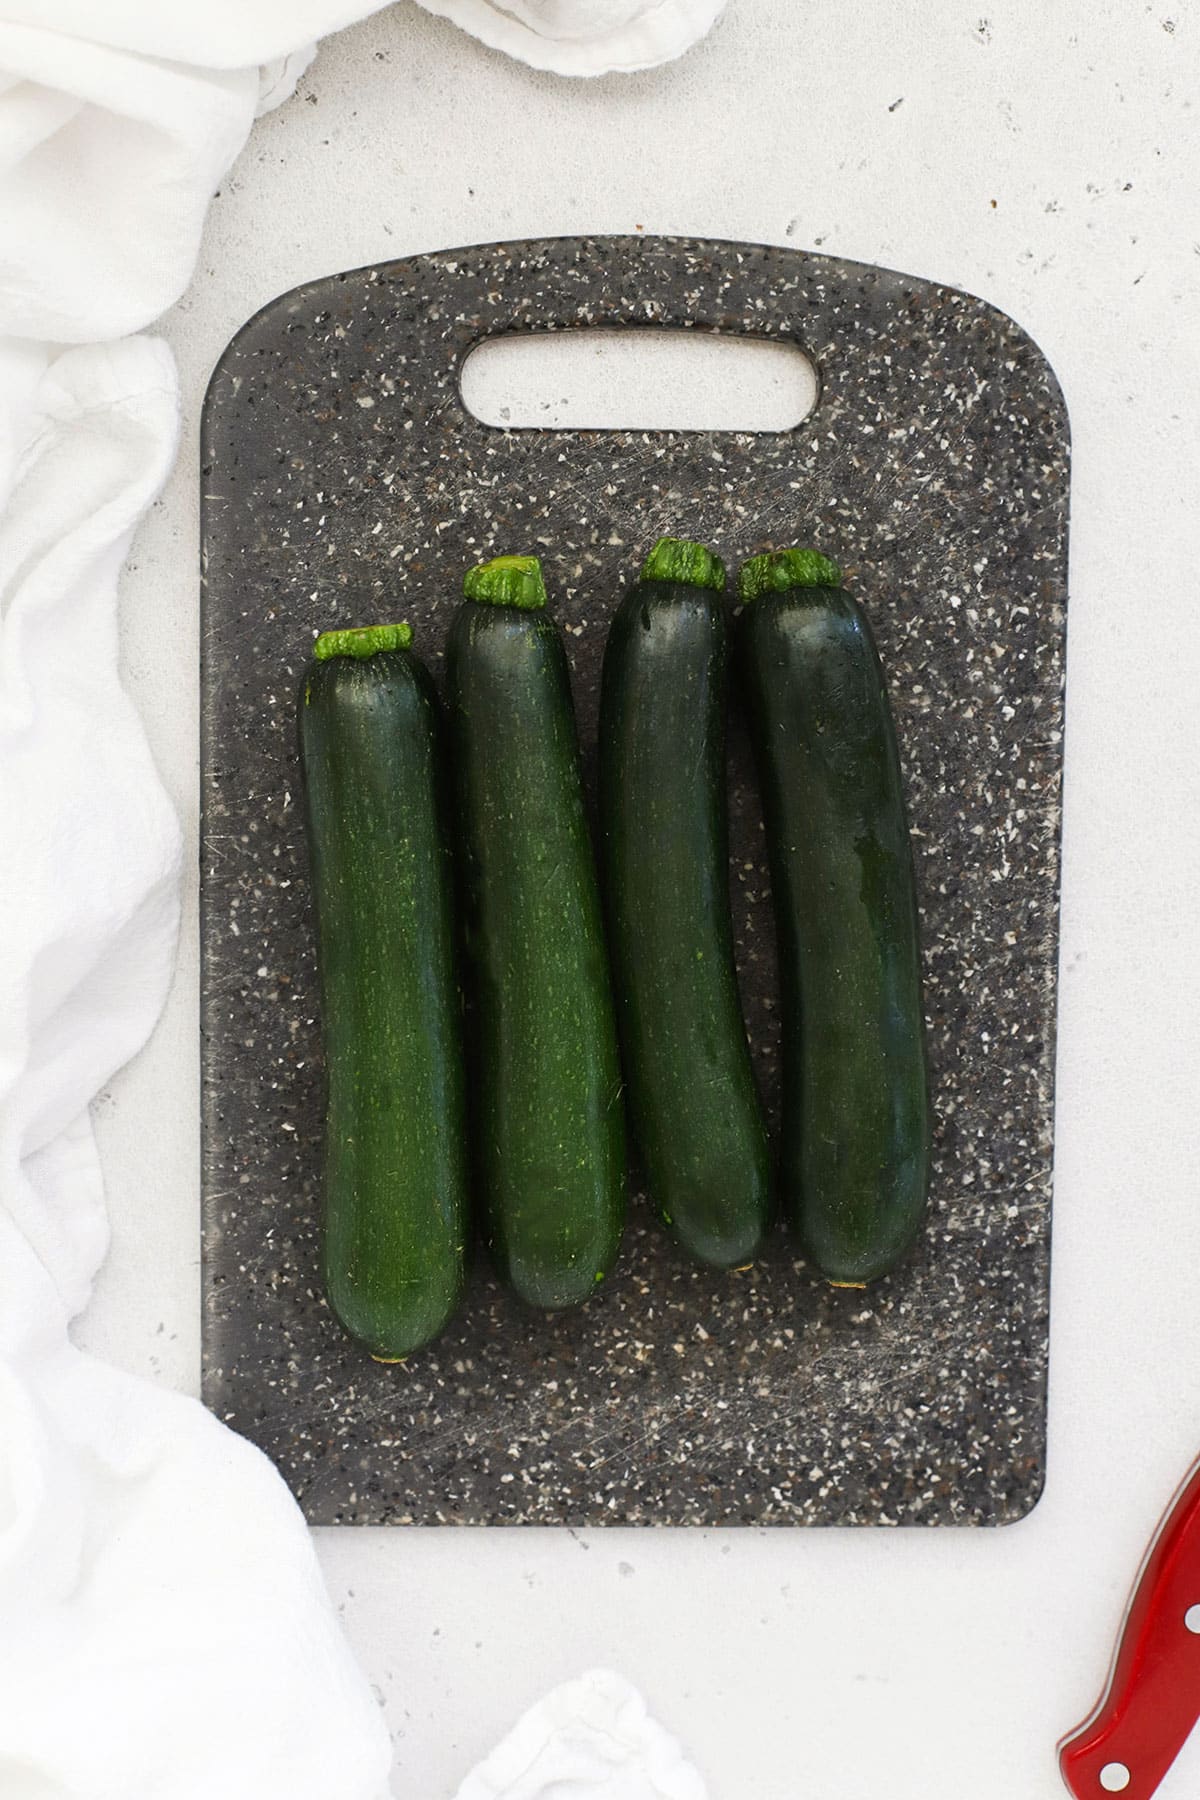 4 clean zucchini on a black cutting board